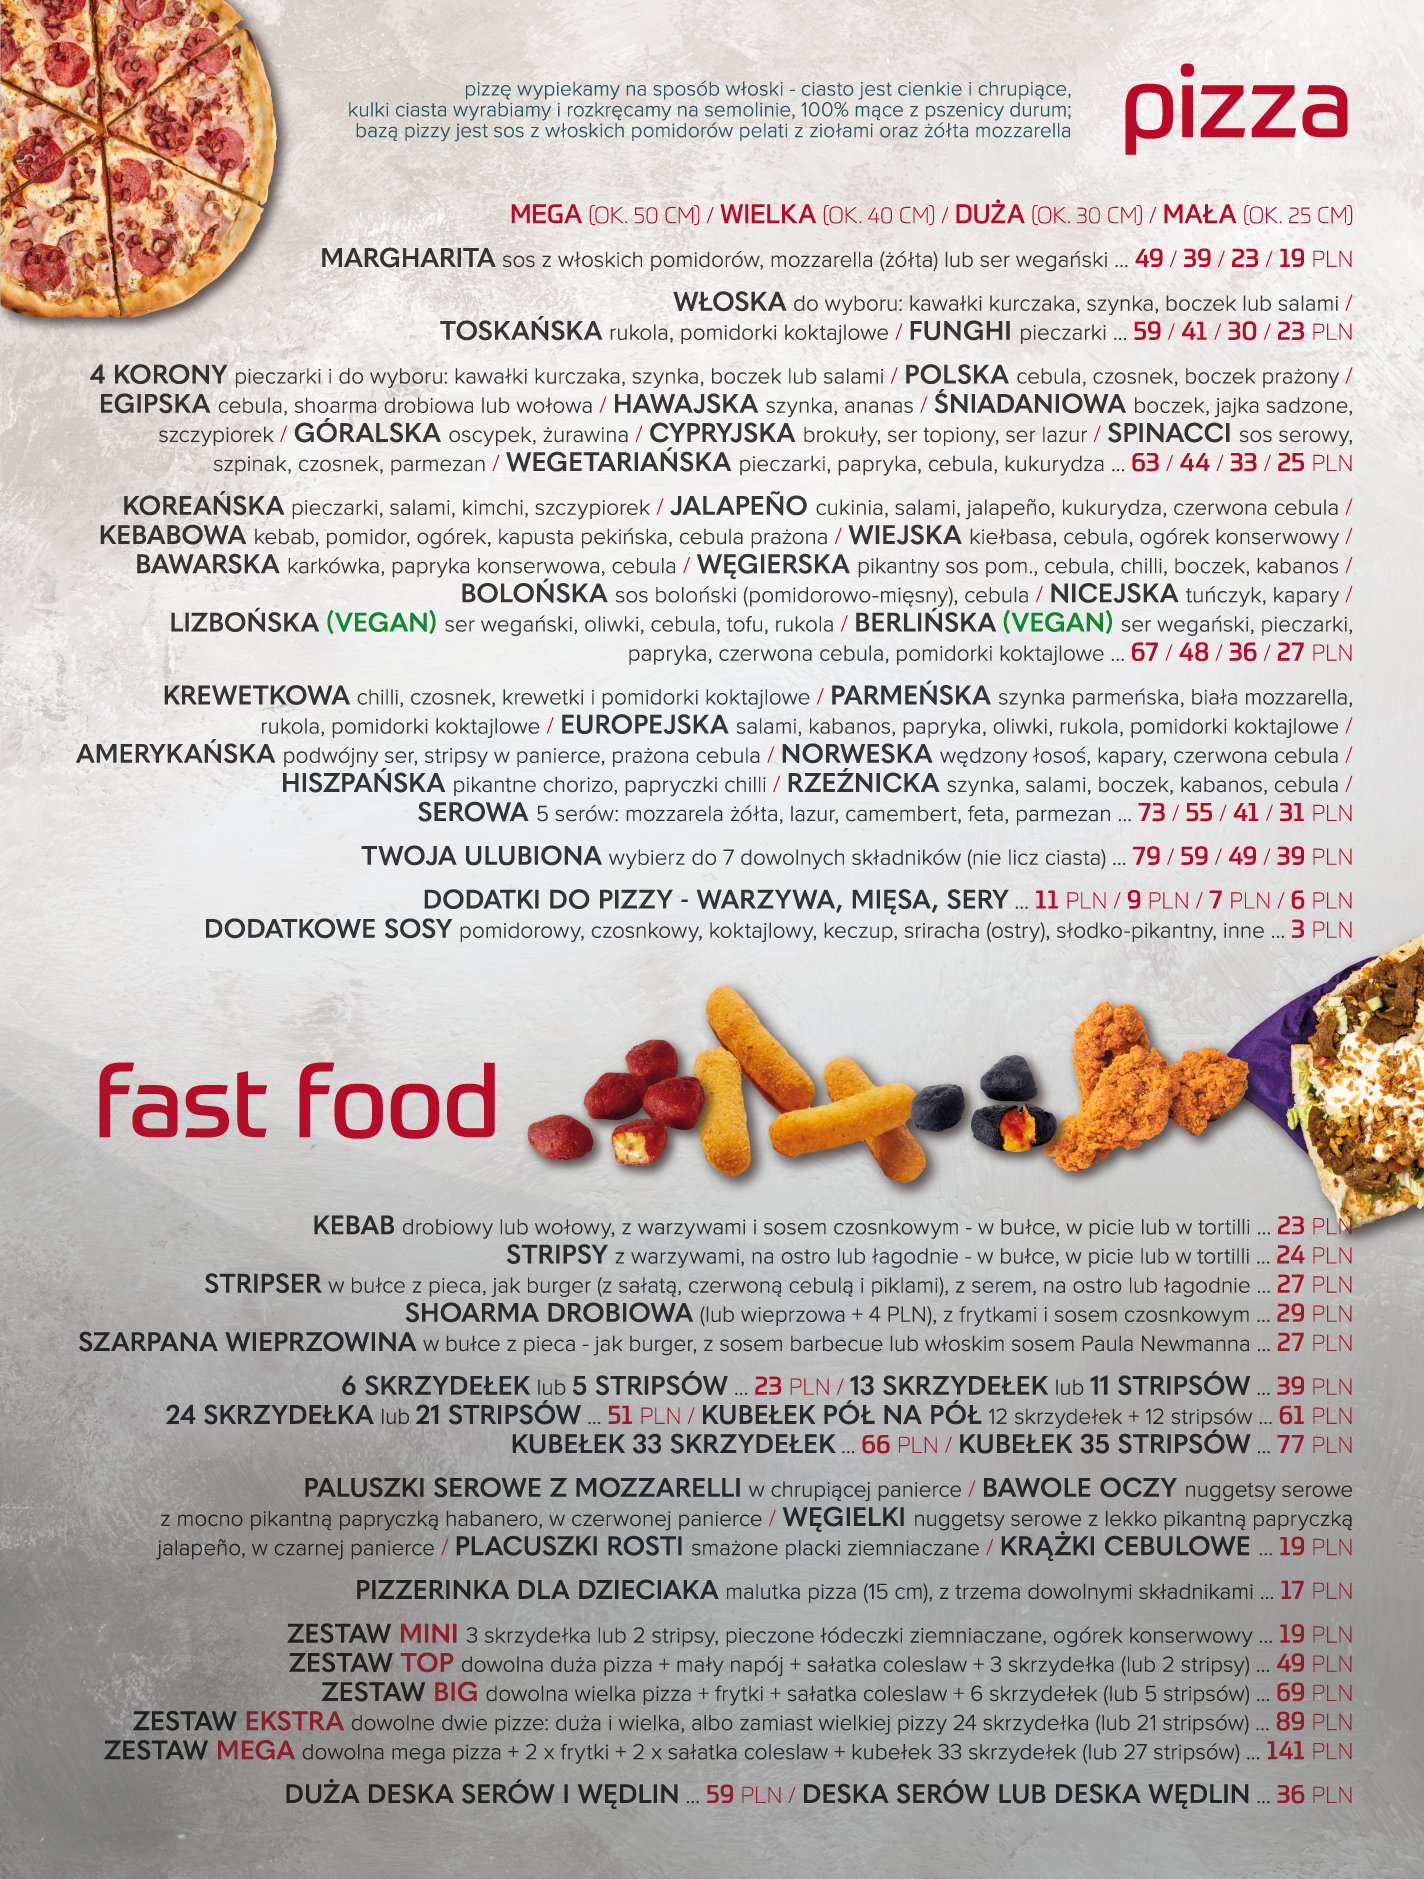 Cztery Korony - doskonała restauracja - pizza, kurczaki po amerykańsku, dania kuchni świata i dania wegańskie